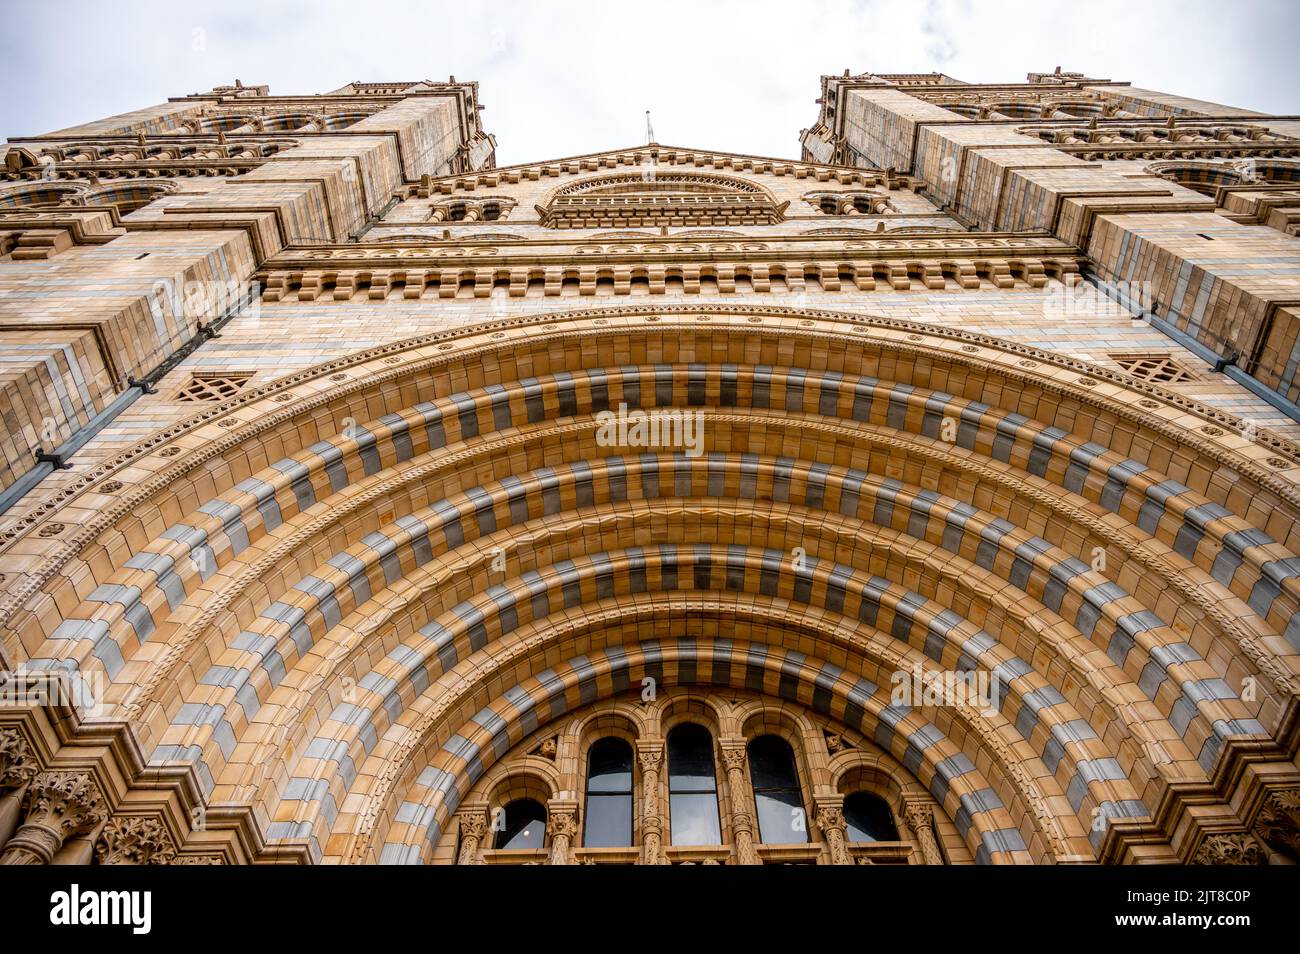 Façade extérieure du Musée d'Histoire naturelle de Londres, avec sa façade en terre cuite ornée, architecture victorienne. Construit dans le style du 19th siècle Banque D'Images